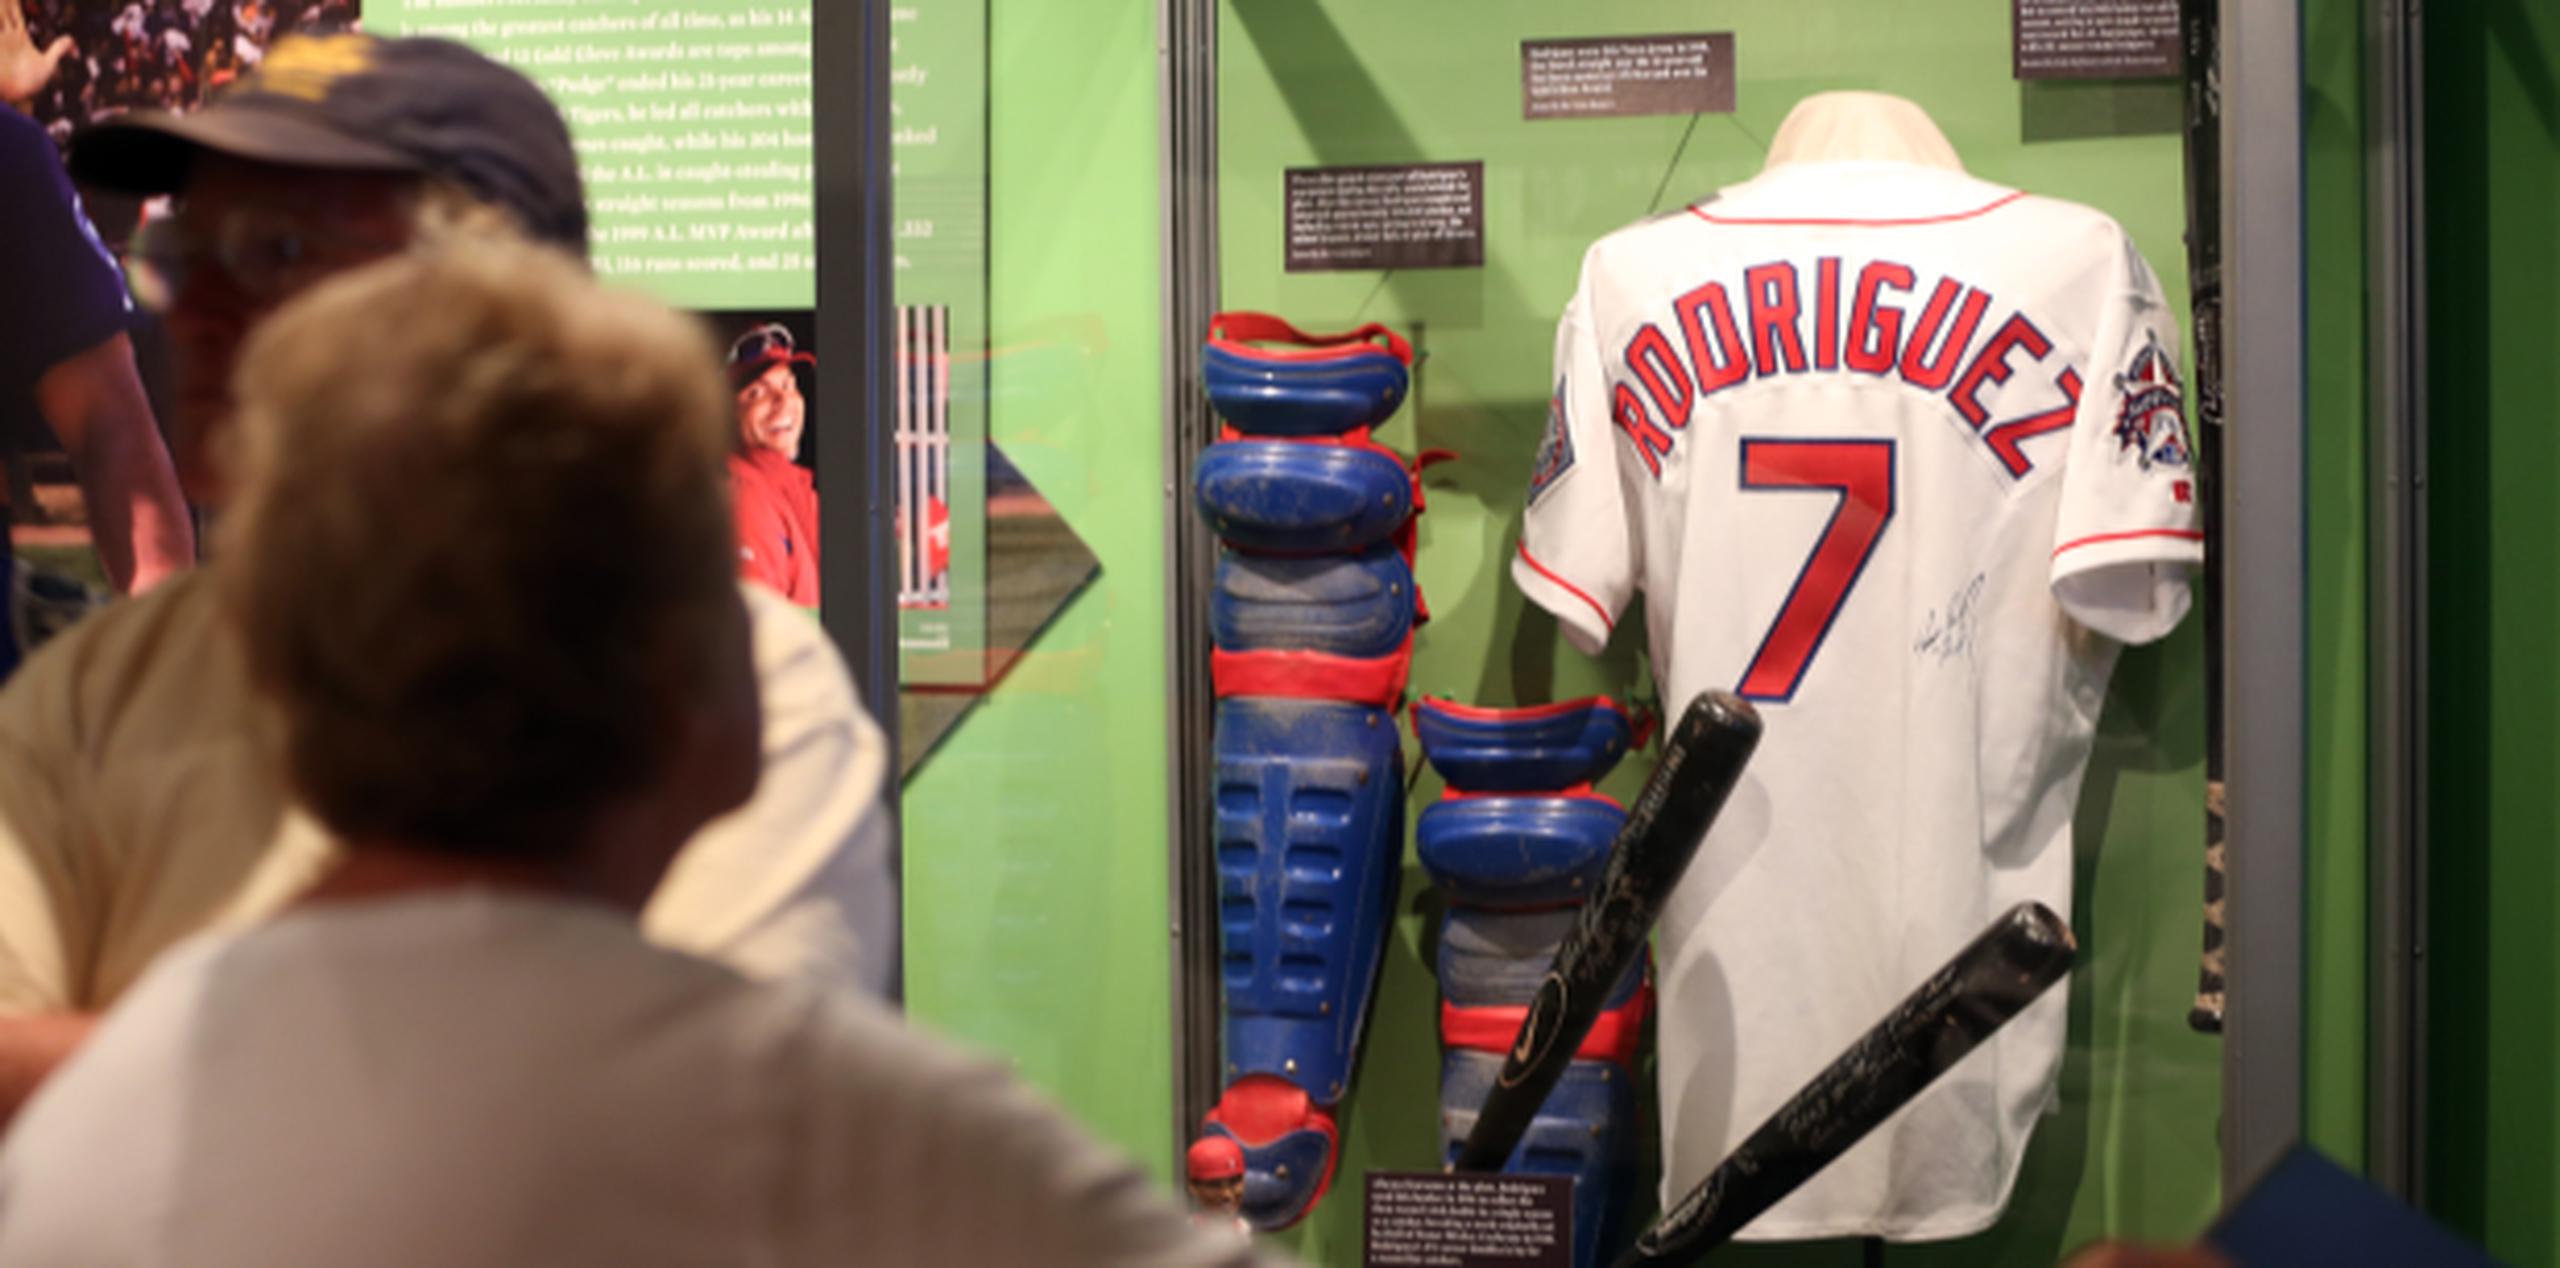 El Museo Nacional del Béisbol en Cooperstown ya exhibe piezas de Iván Rodríguez. En la foto se ven uno de sus uniformes de Texas, sus aperos, una trocha y un par de bates. (juan.martinez@gfrmedia.com)